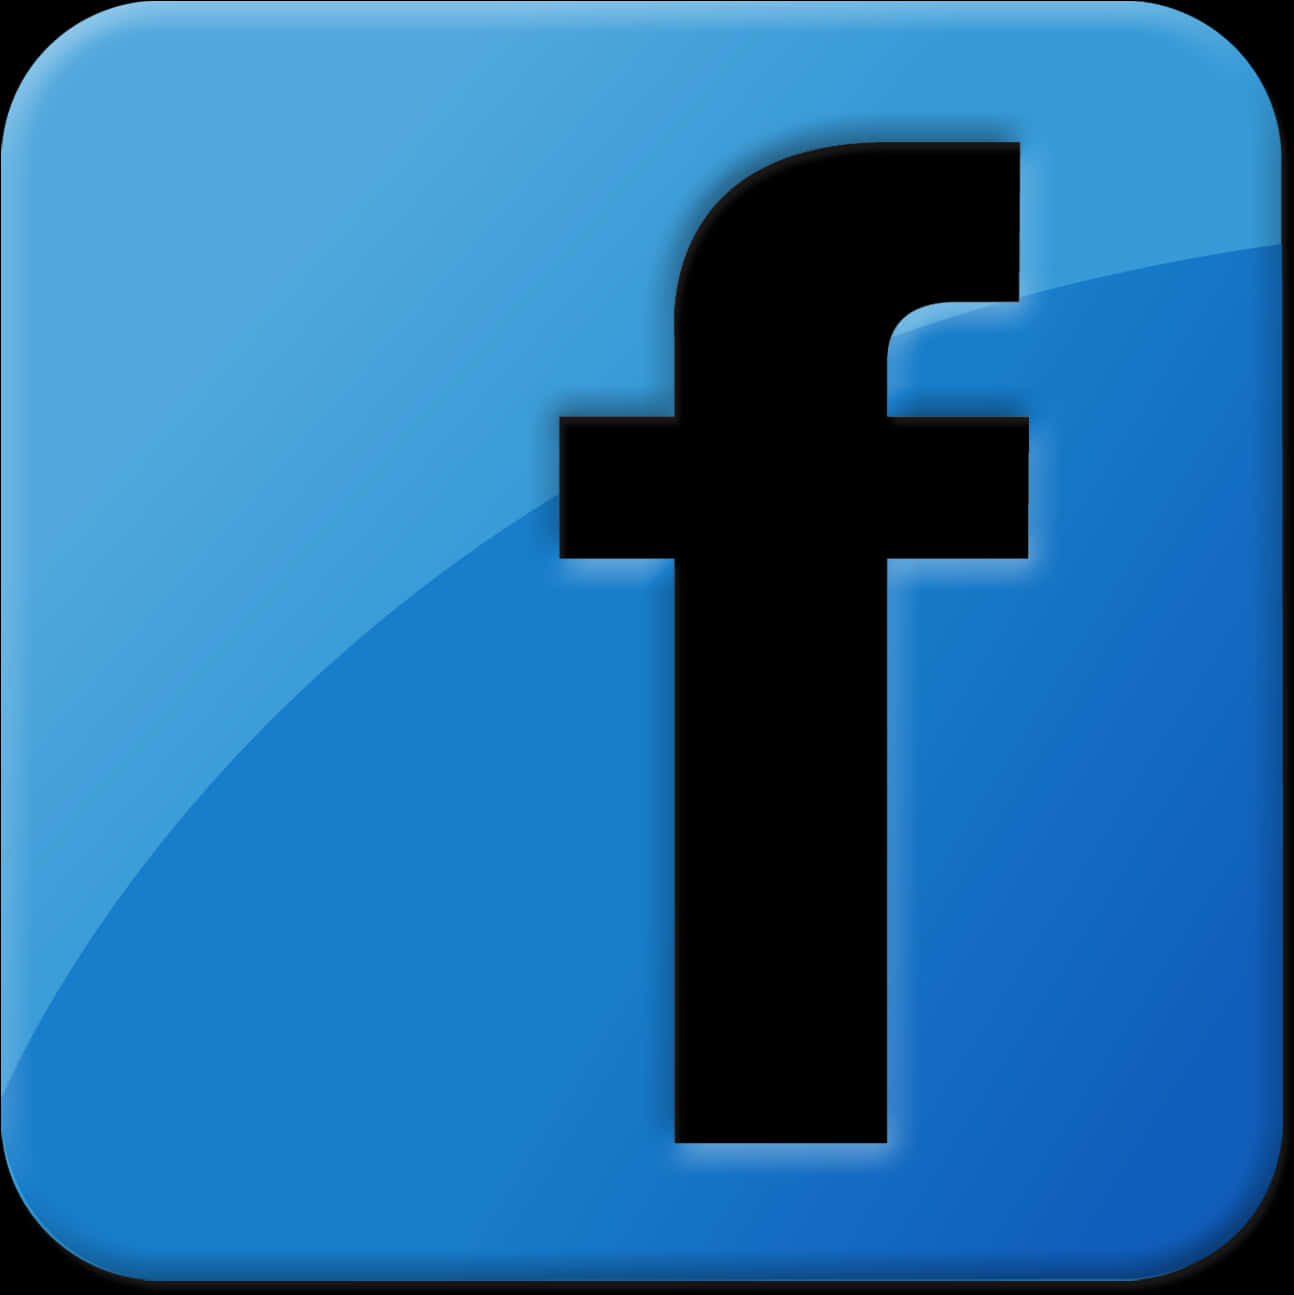 Facebook Logo Transparent Background Png